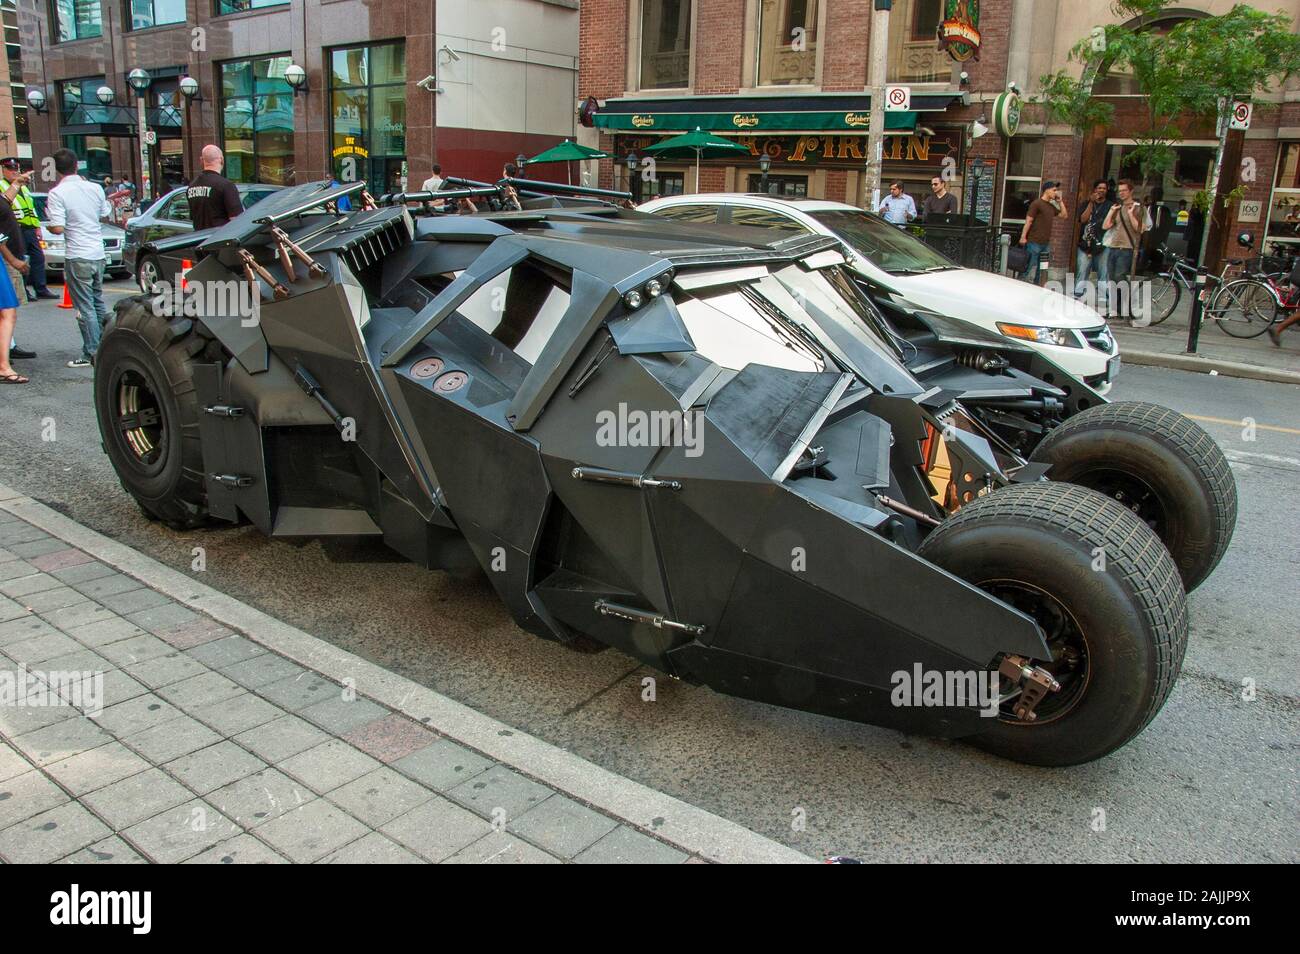 Batmobile utilisée dans la suite de Batman The Dark Knight, visiter la ville de Toronto pour une campagne de promotion. Banque D'Images